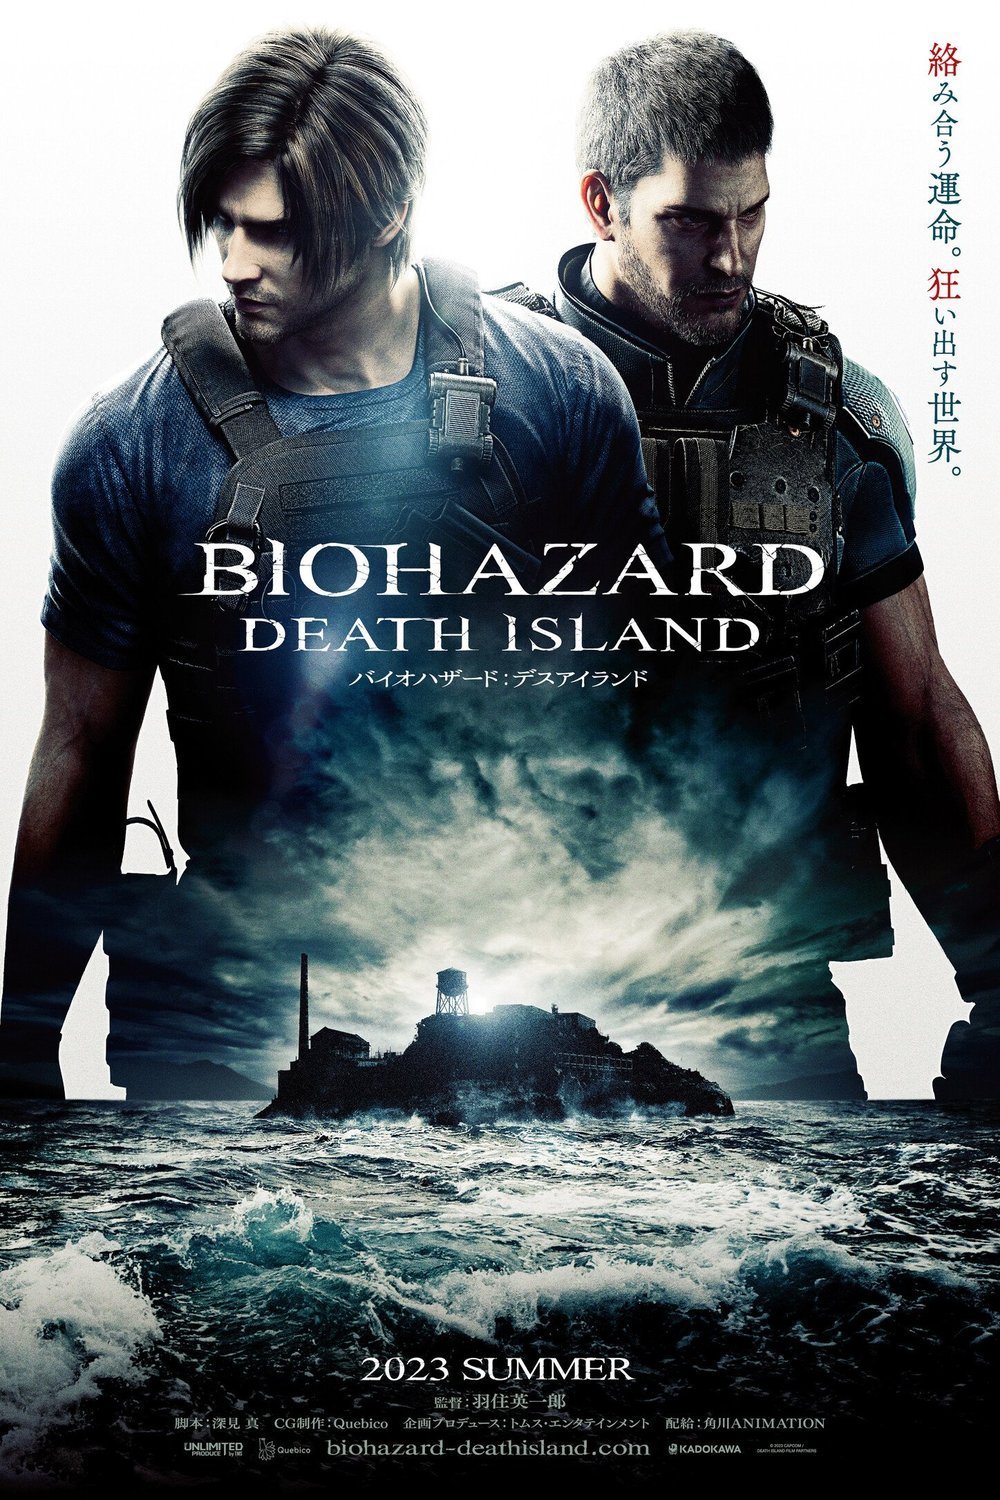 L'affiche originale du film Biohazard: Death Island en japonais